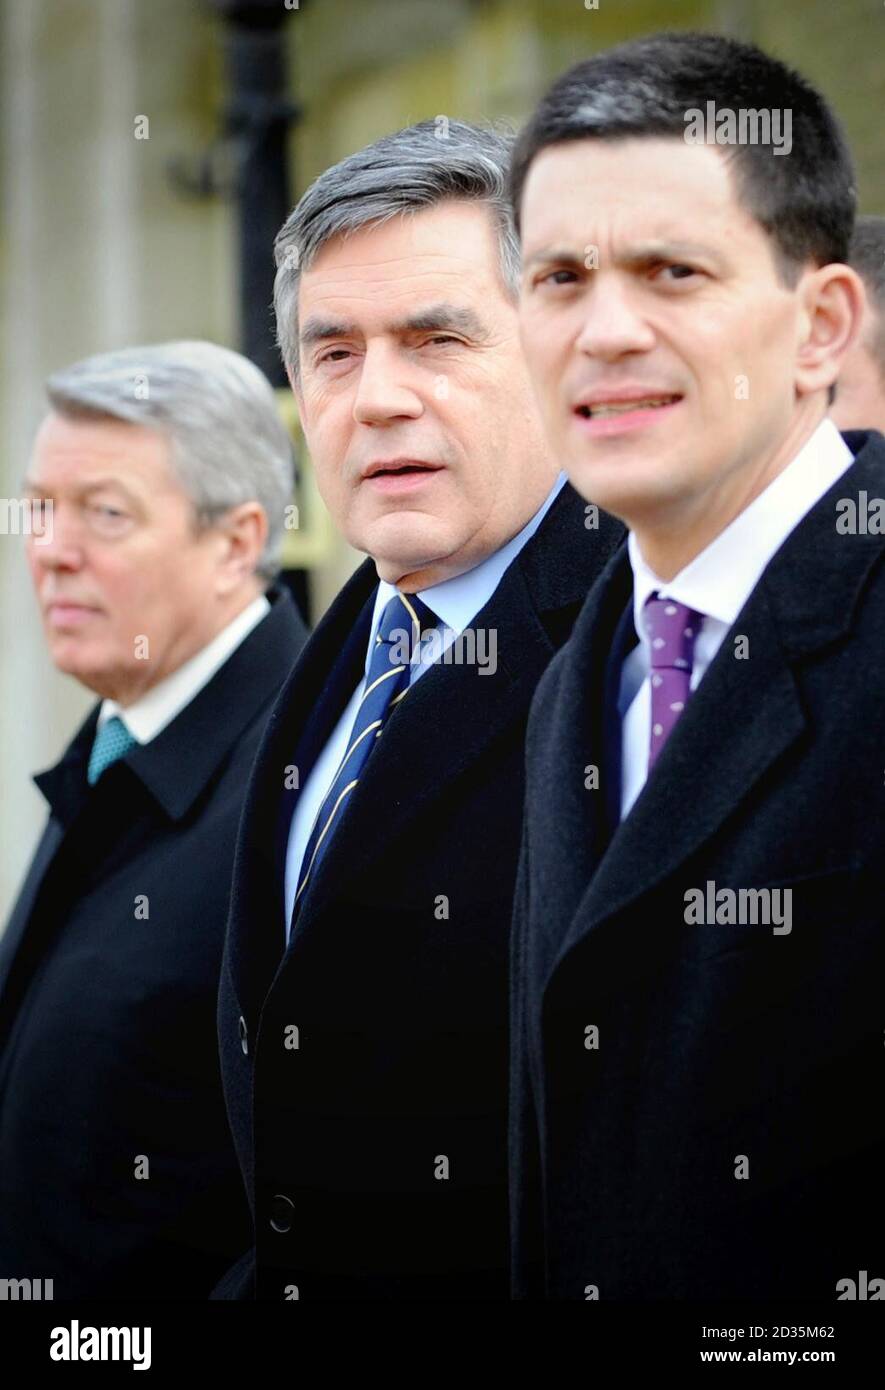 Premierminister Gordon Brown geht heute mit seinem Innenminister Alan Johnson (links) und Außenminister David Miliband (rechts) über die Horse Guards Parade in London, nachdem er während seines dreitägigen Staatsbesuchs in Großbritannien an der offiziellen Begrüßung des südafrikanischen Präsidenten Jacob Zuma teilgenommen hatte. Stockfoto